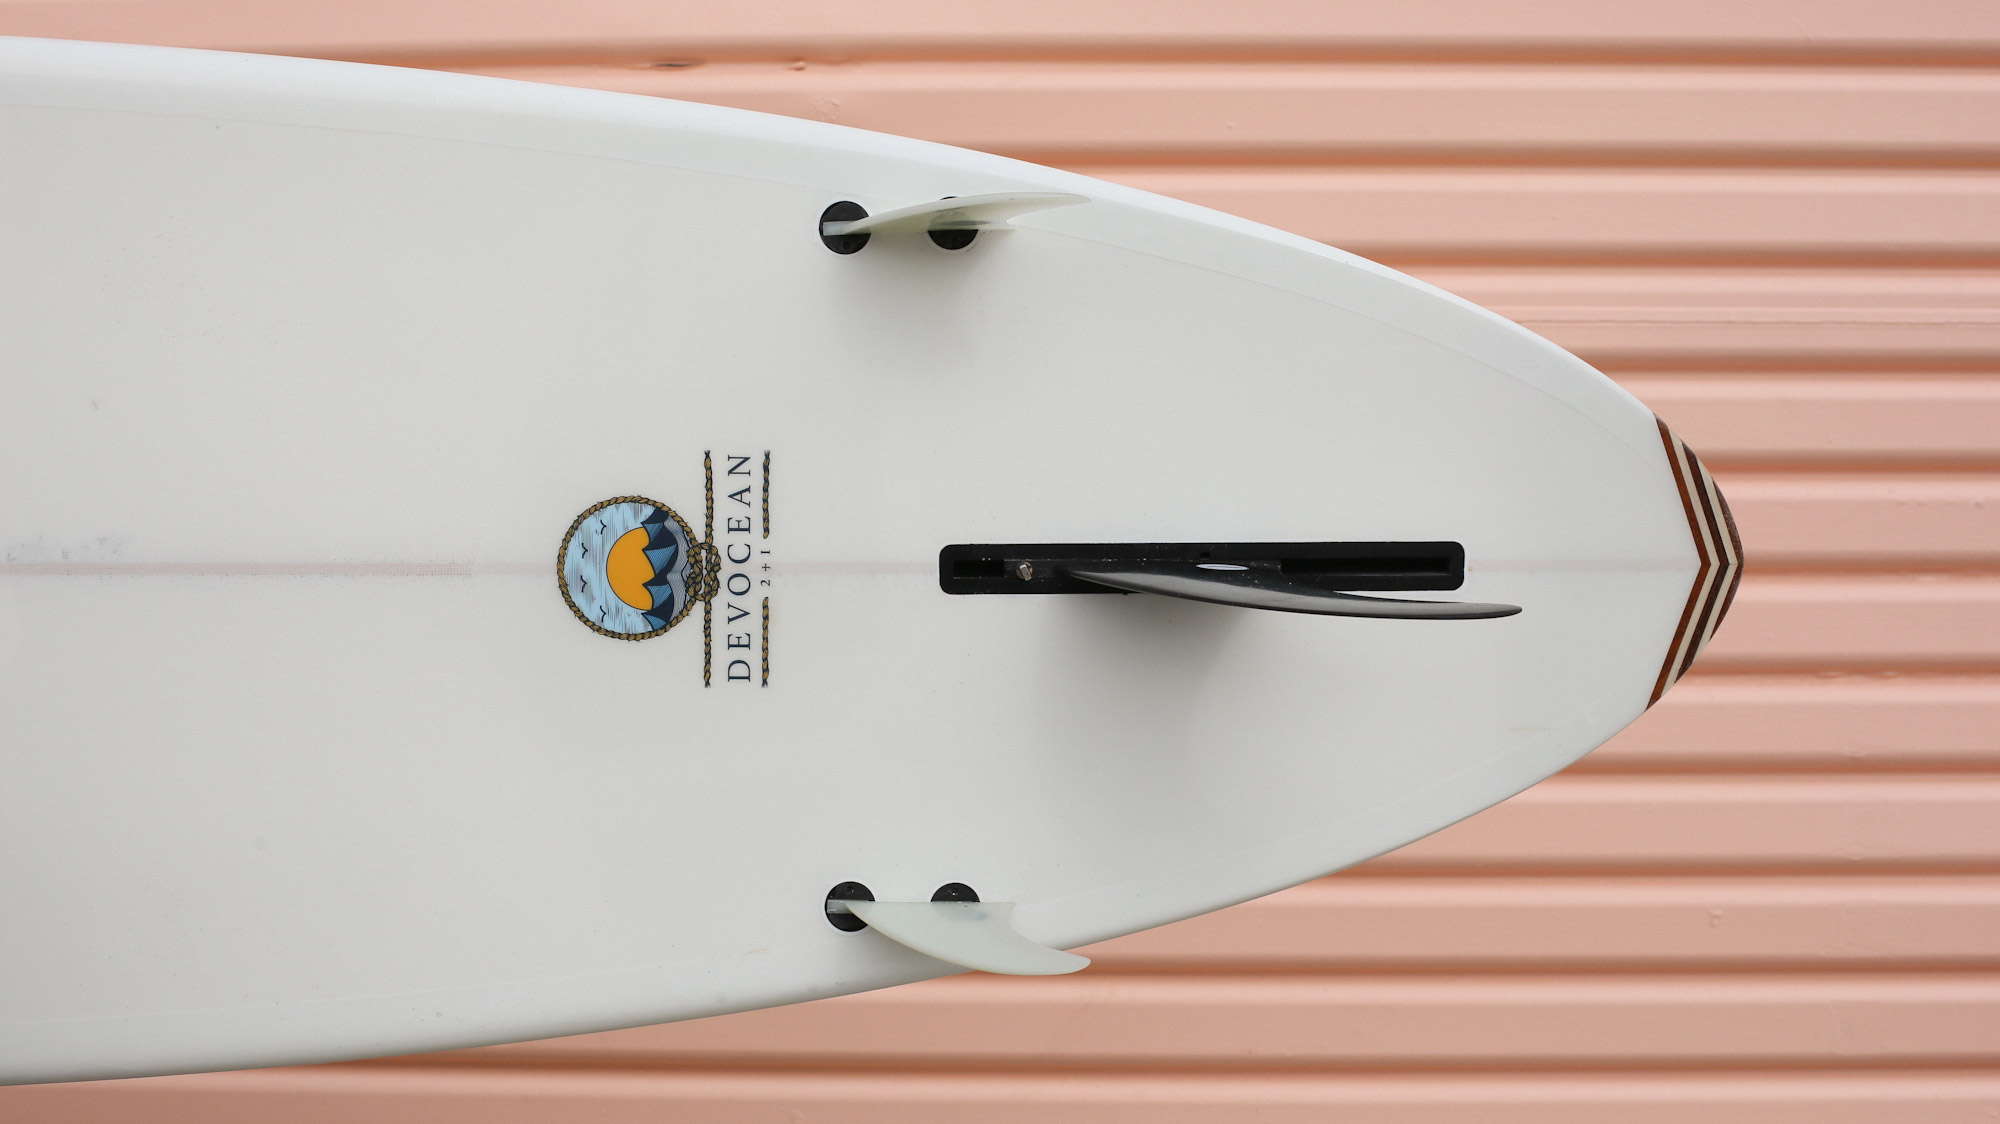 Devocean Surfboard Design